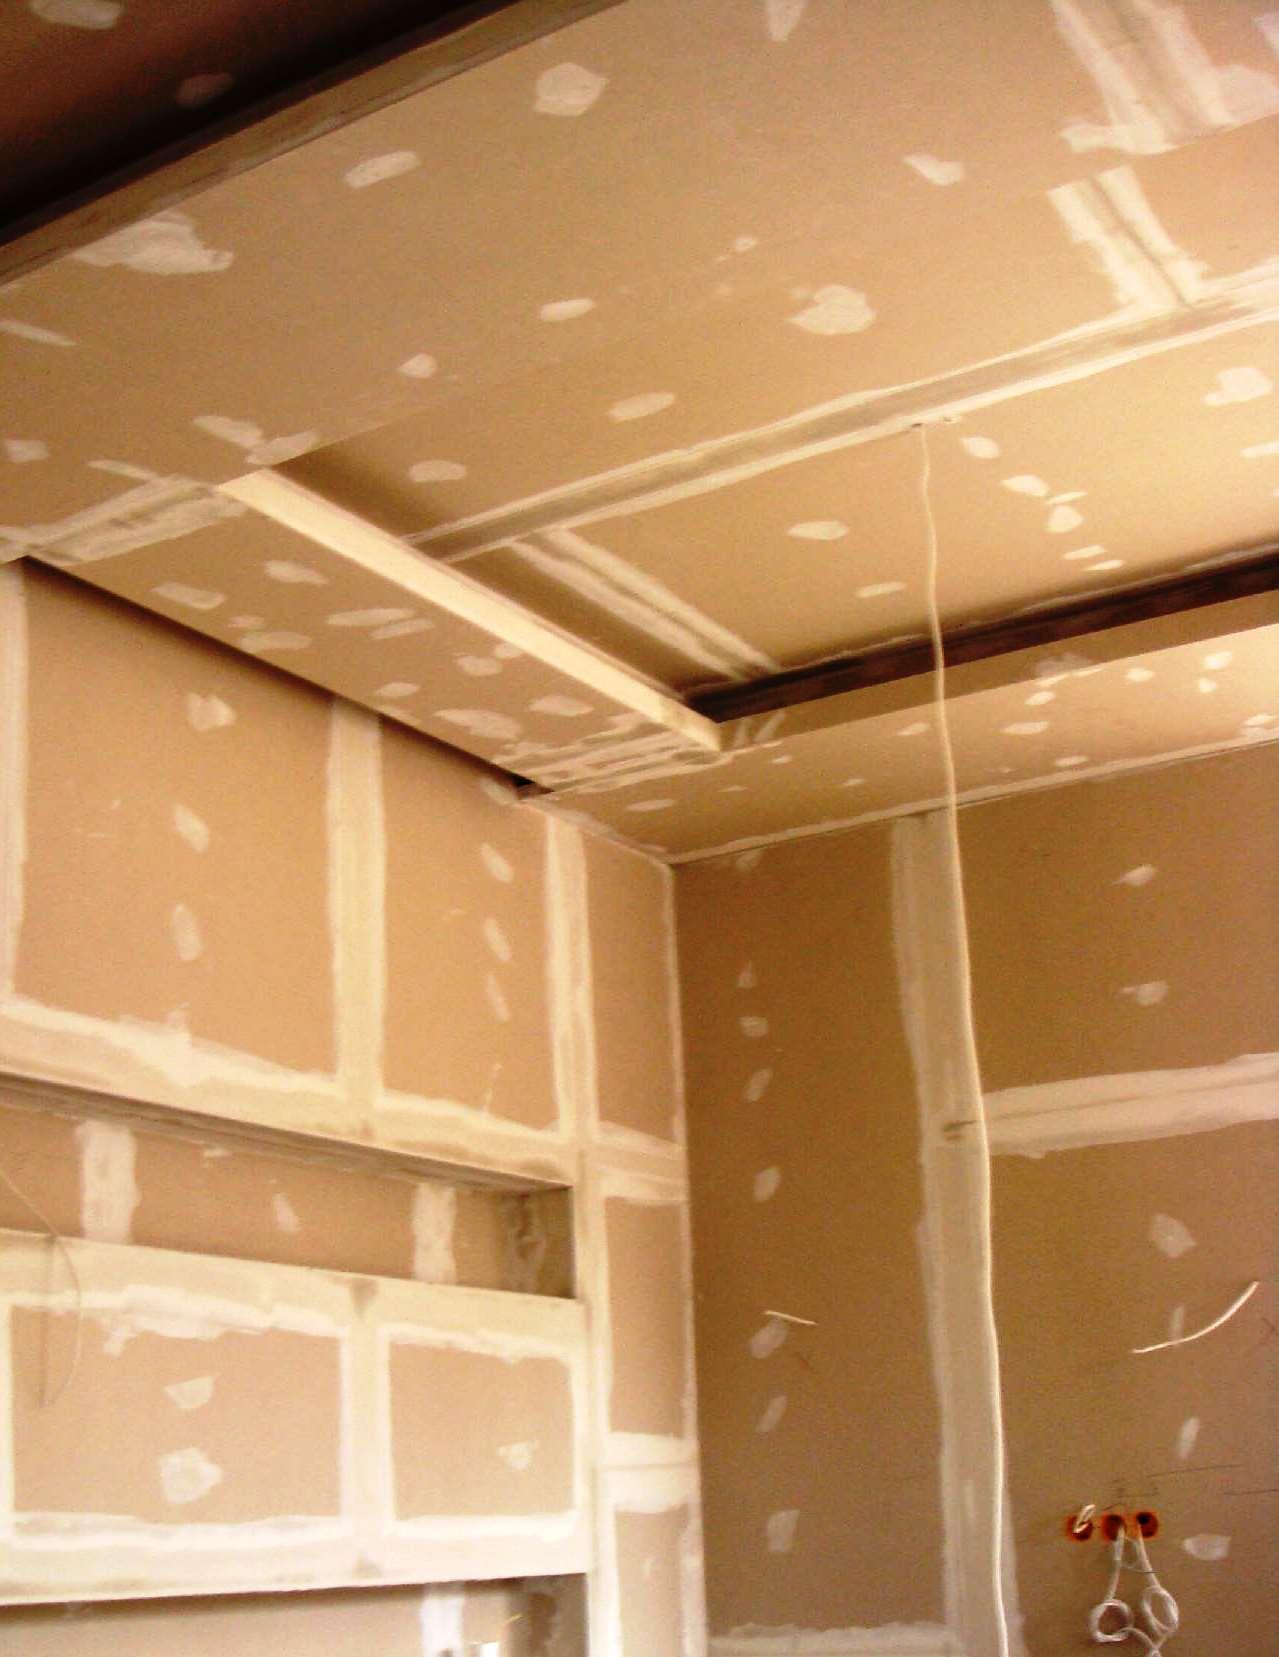 El pladur es muy utilizado en divisiones interiores y falsos techos.